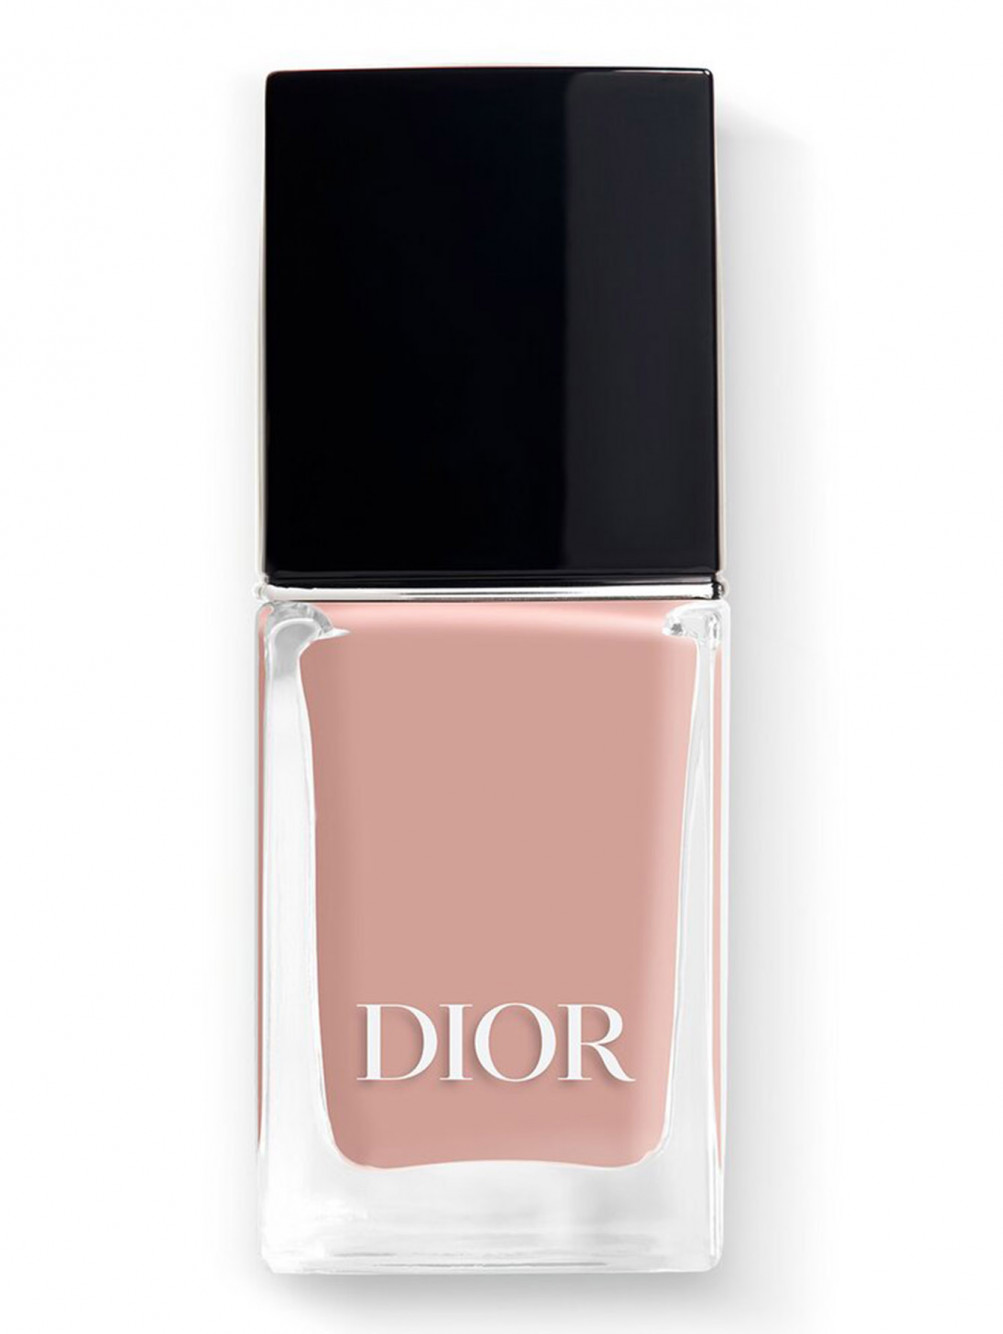 Лак для ногтей с эффектом гелевого покрытия Dior Vernis, 100 Естественный, 10 мл - Общий вид